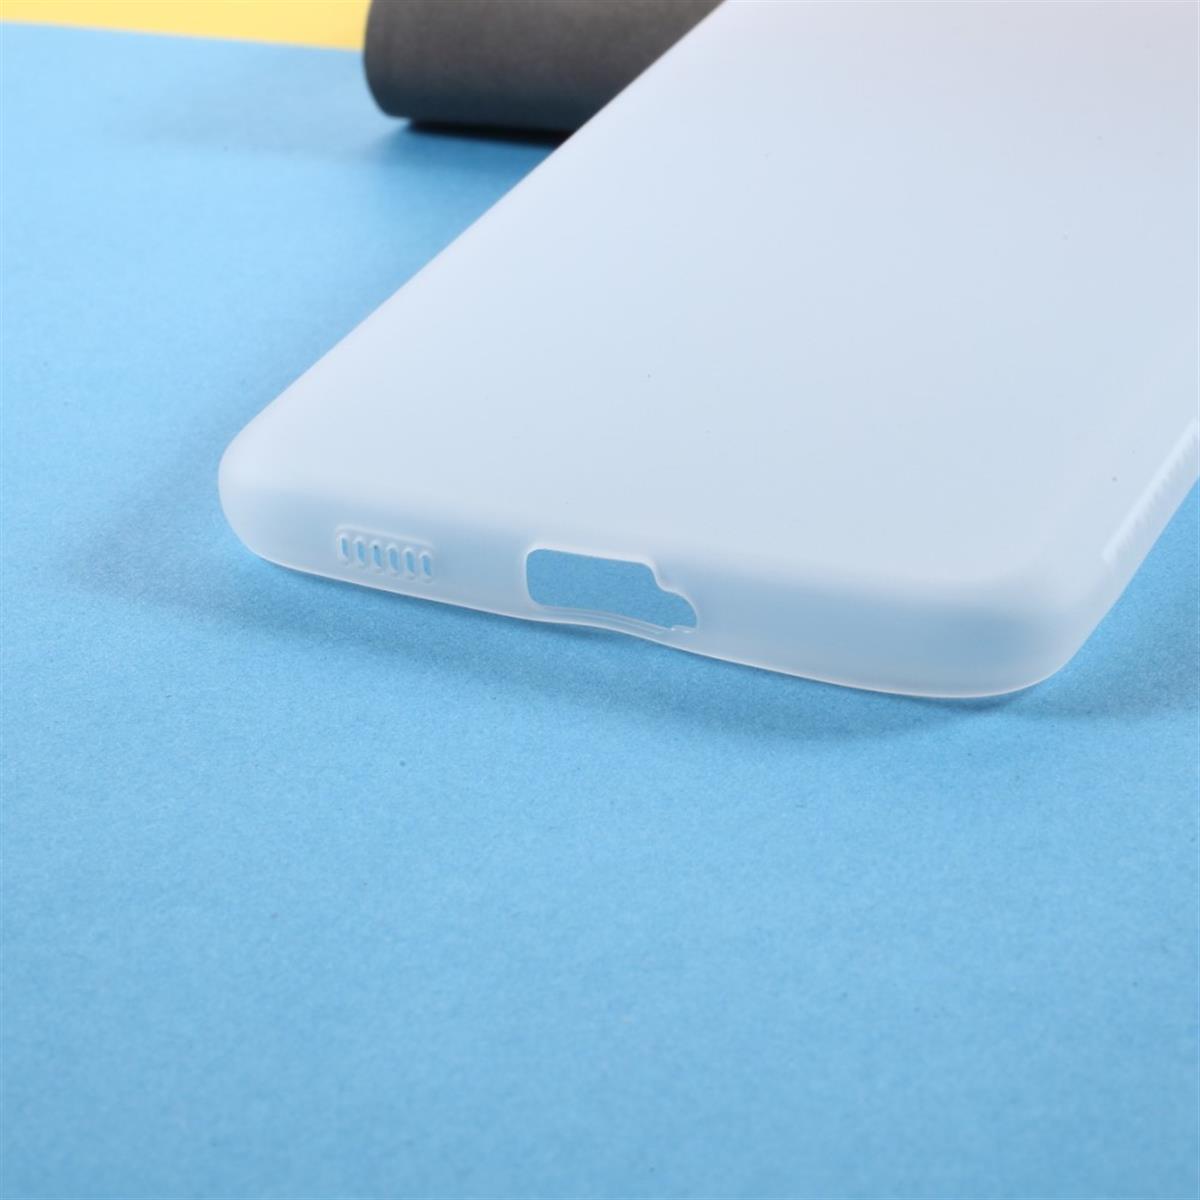 Hülle für Samsung Galaxy S21+ (Plus) Handyhülle Silikon Case Cover Schutzhülle Matt Weiß